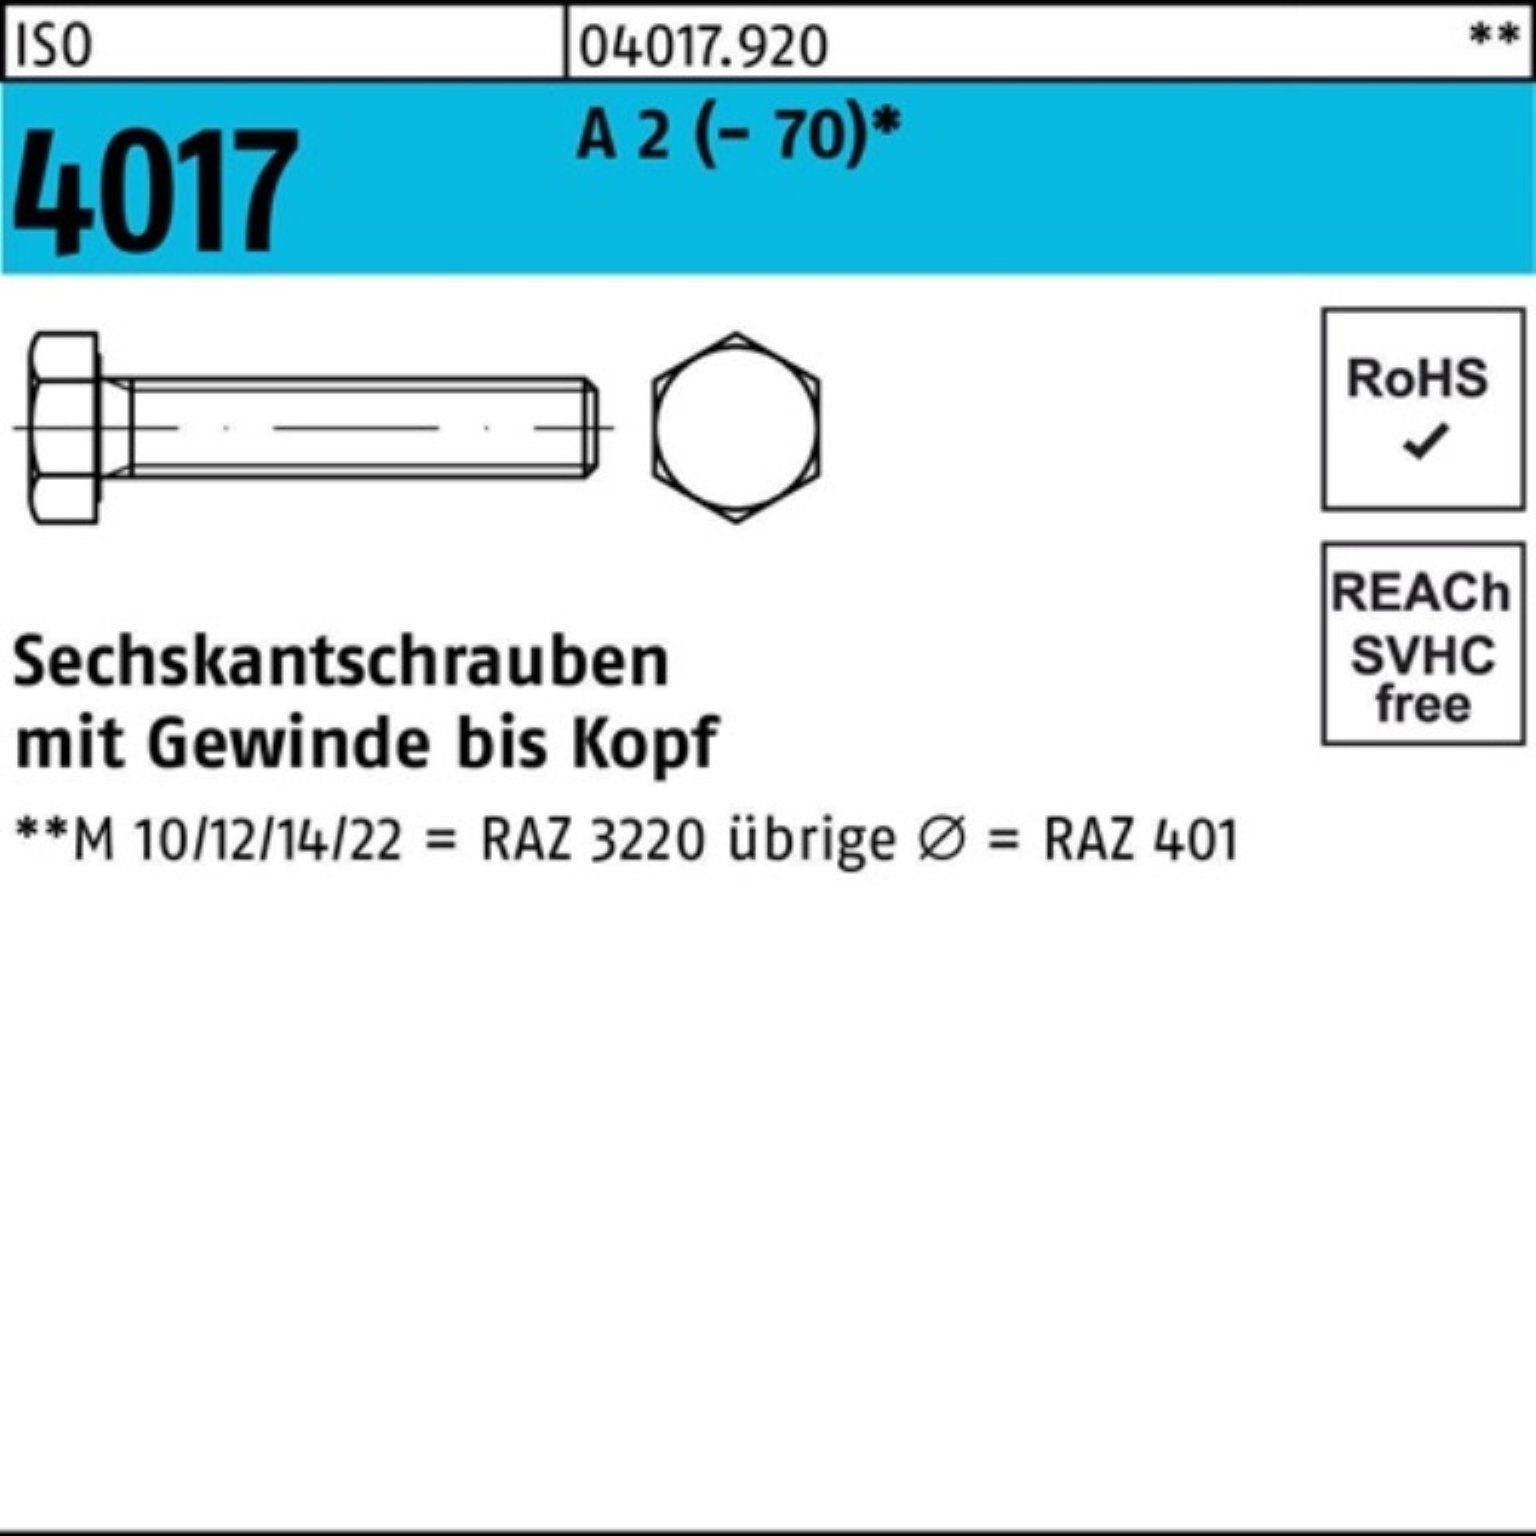 Bufab Sechskantschraube 100er Pack Sechskantschraube ISO 4017 VG M3x 25 A 2 (70) 100 Stück